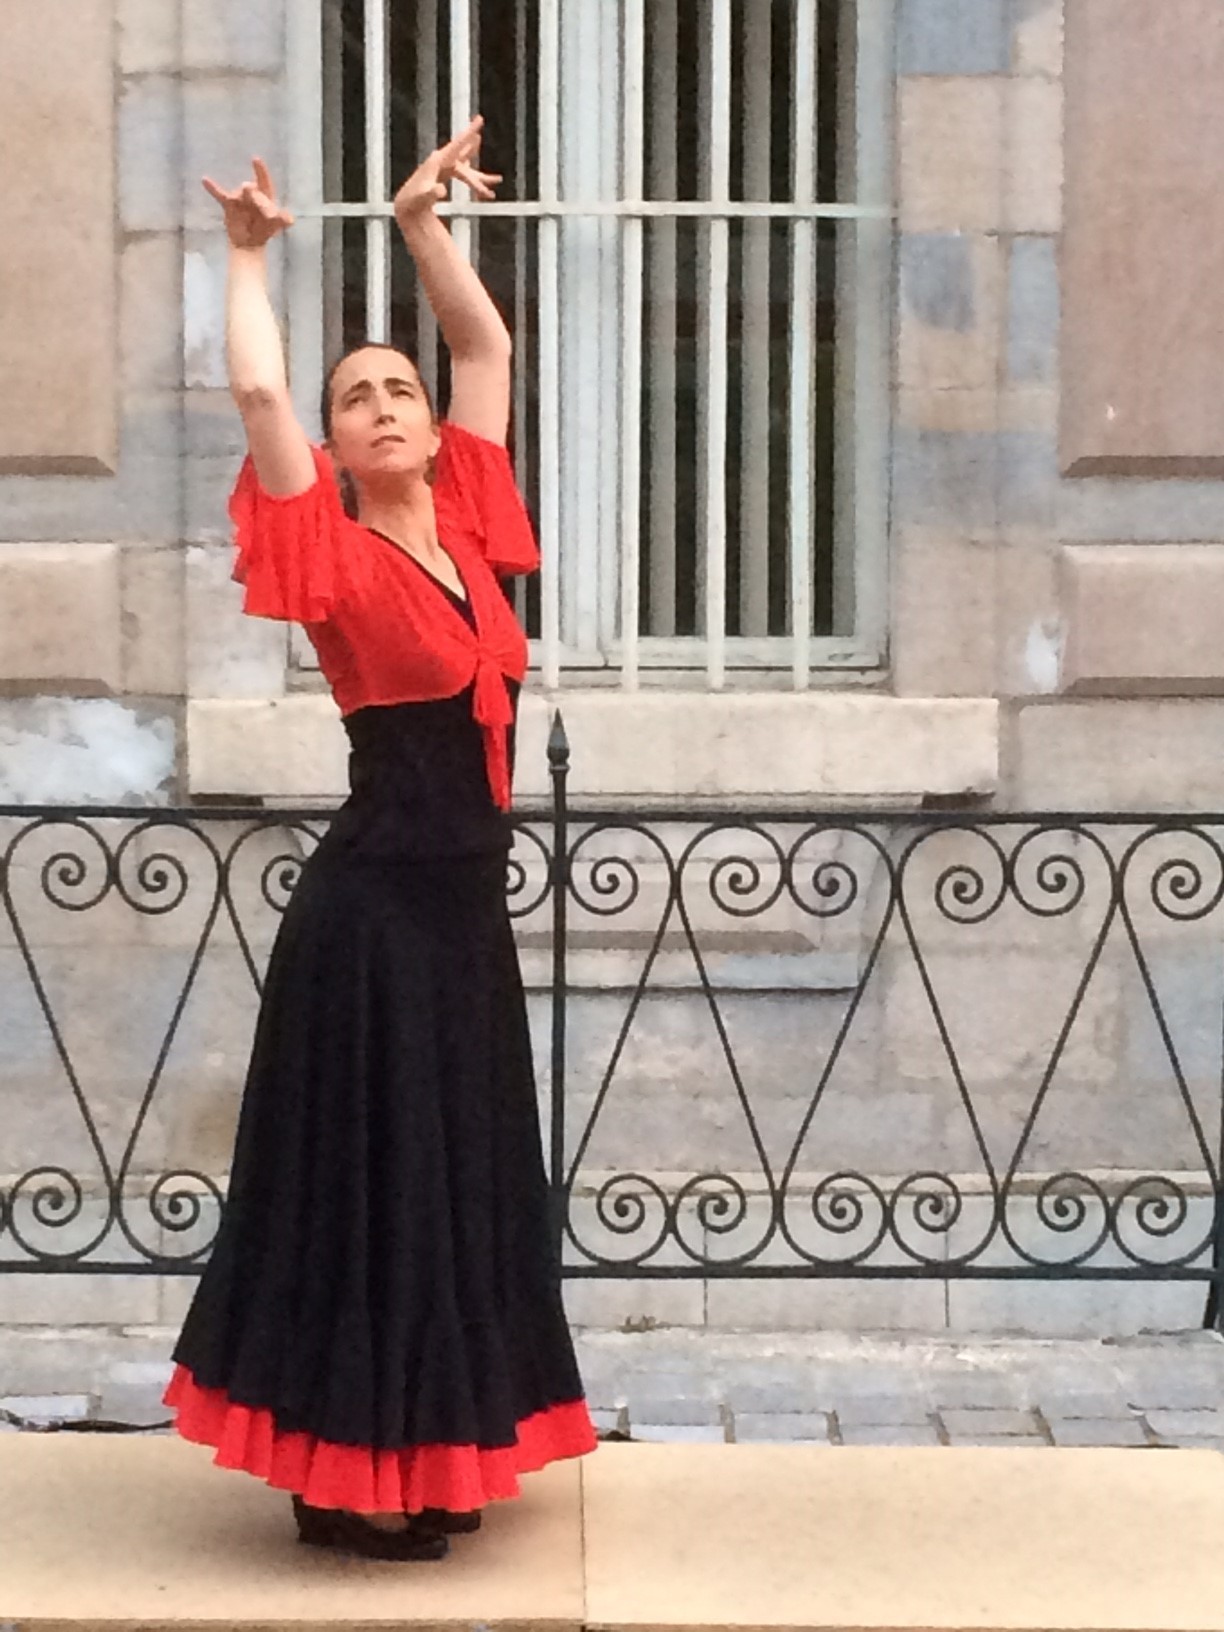 Voyage flamenco 2018 office tourisme besancon laurence marion diaz solea palais de justice duende flamenco